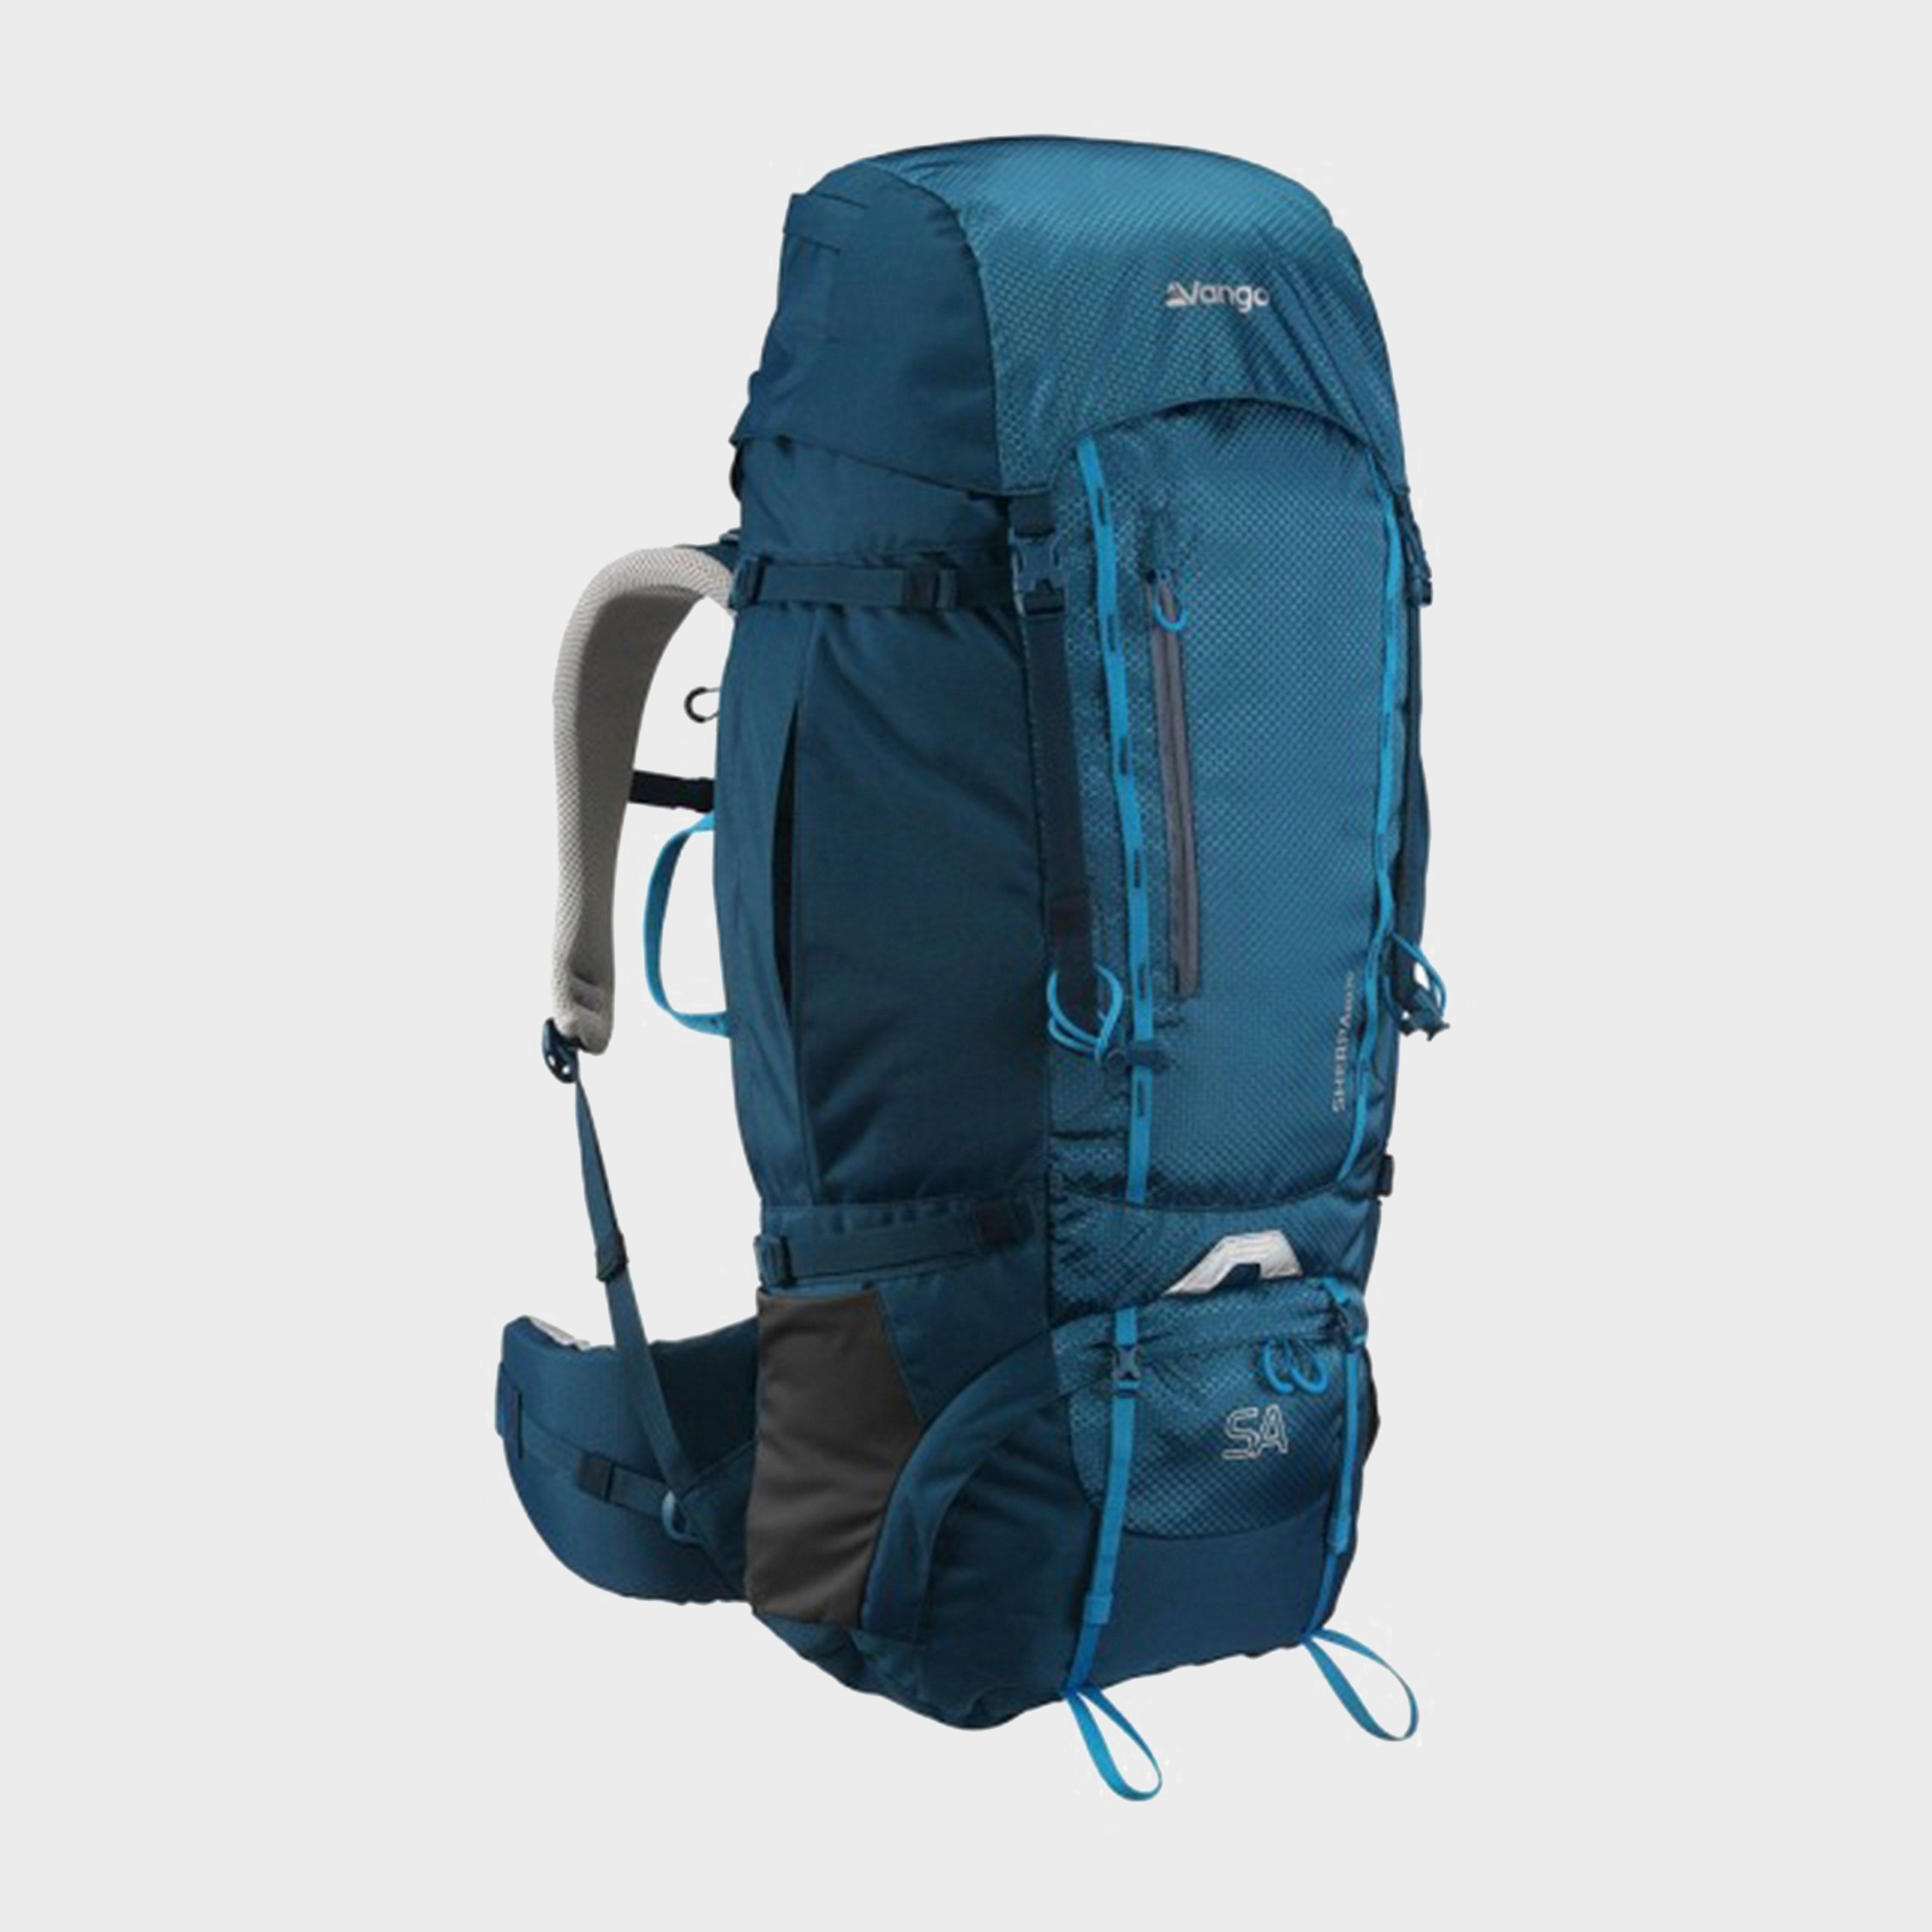 Vango Vango Sherpa 60:70S Backpack - Blue, Blue